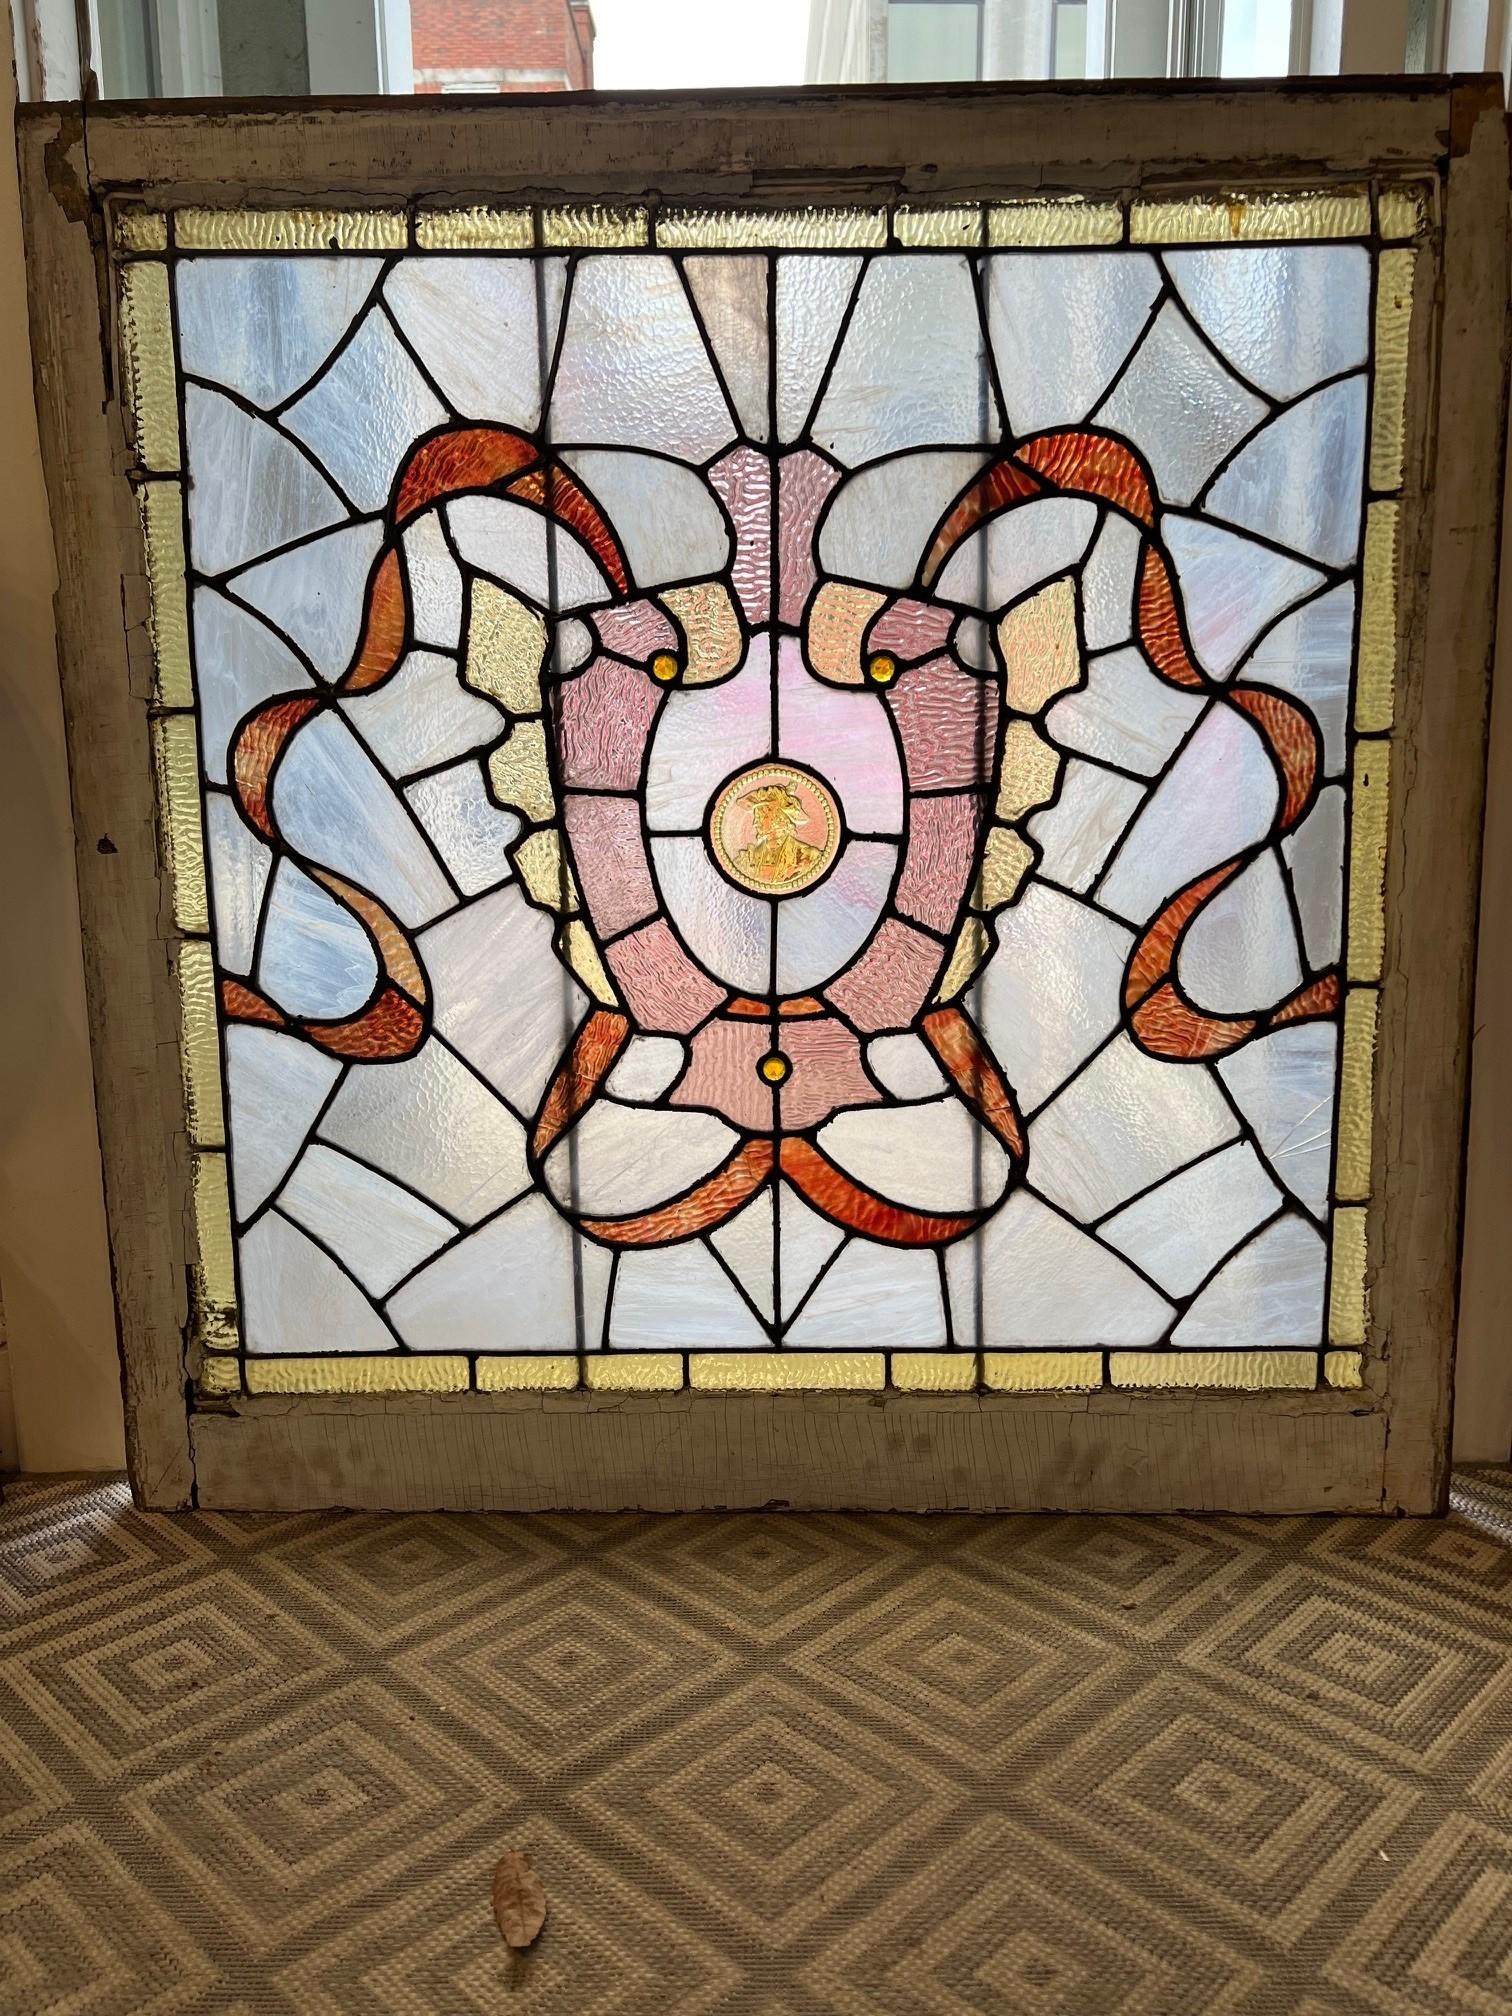 Schönes antikes Buntglasfenster mit zentraler viktorianischer Büste. Ich bin mir nicht sicher, wer in der Mitte zu sehen ist, aber es ist ein großartiges und ungewöhnliches Stück, das wie eine Goldmünze aussieht. Es ist ein schönes, helles,